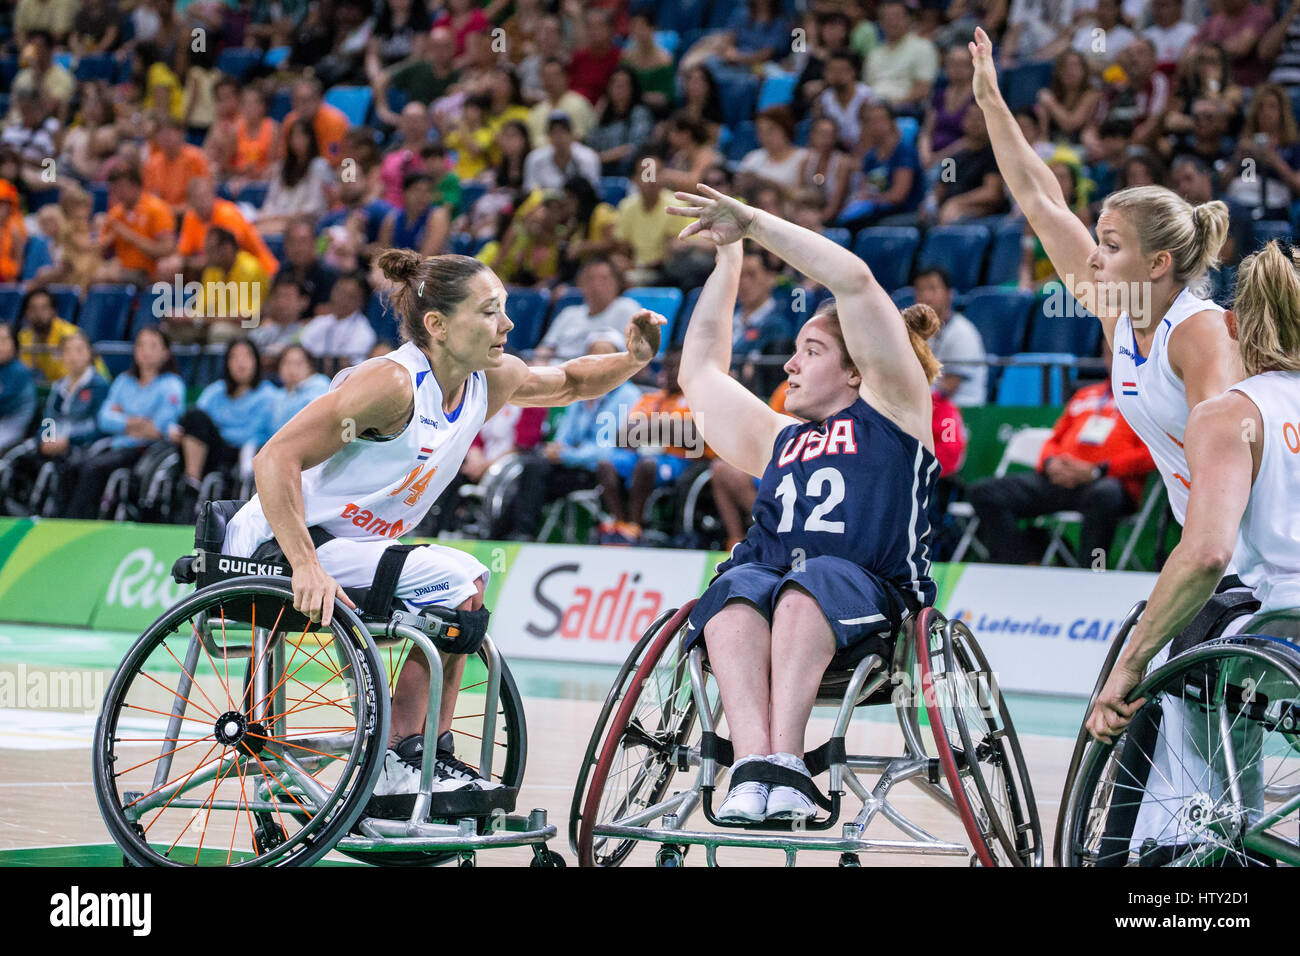 Competición de baloncesto en silla de ruedas durante los Juegos Paralímpicos de verano Rio 2016 Foto de stock